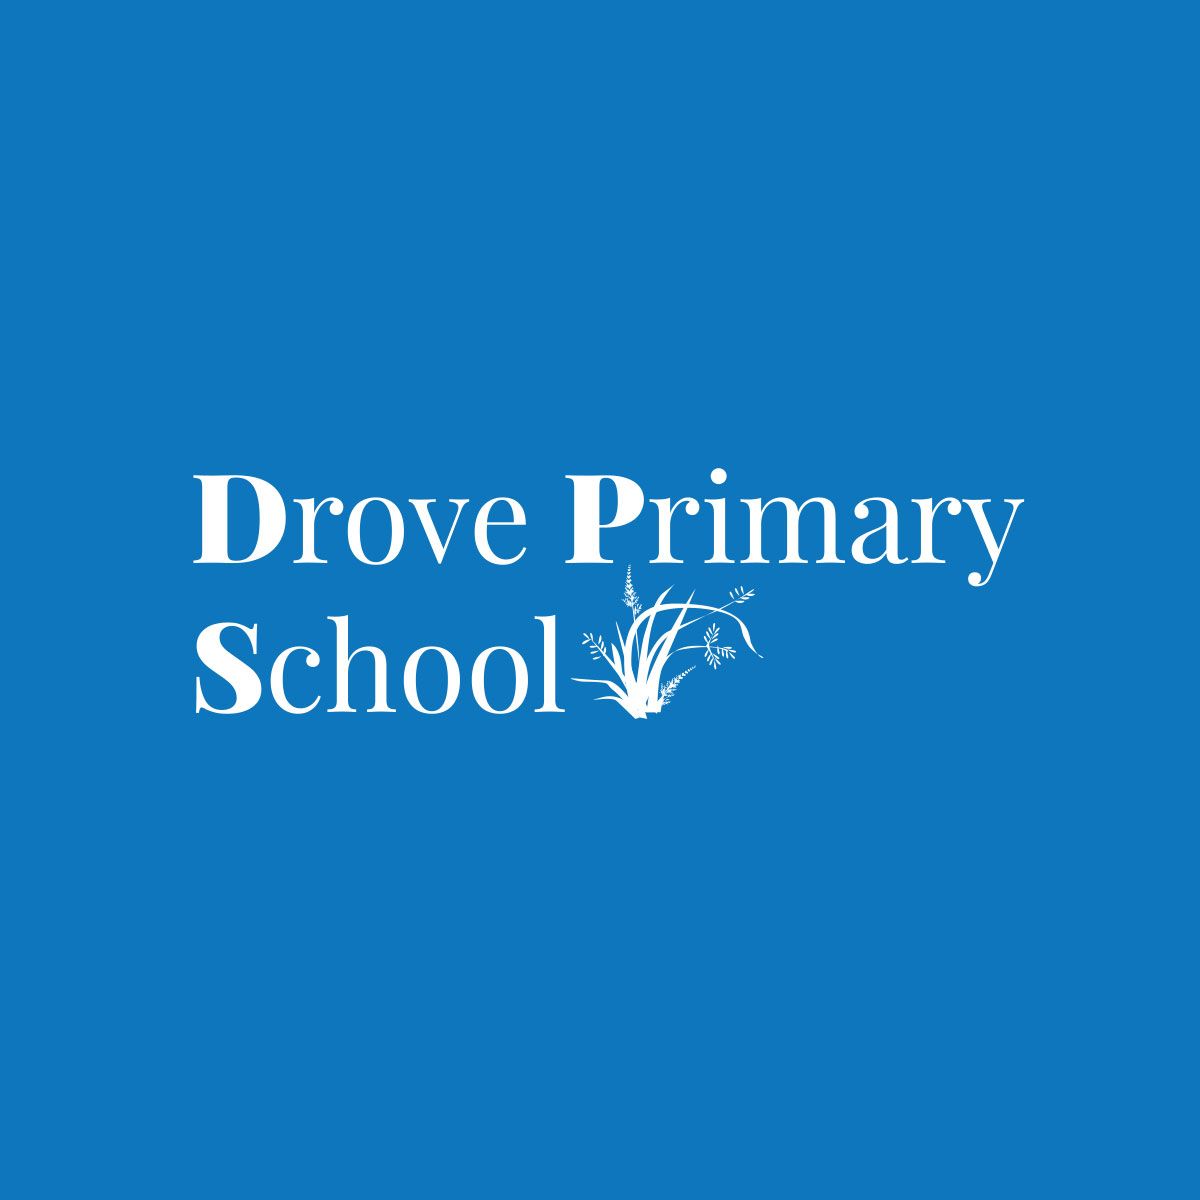 Drove Primary School logo